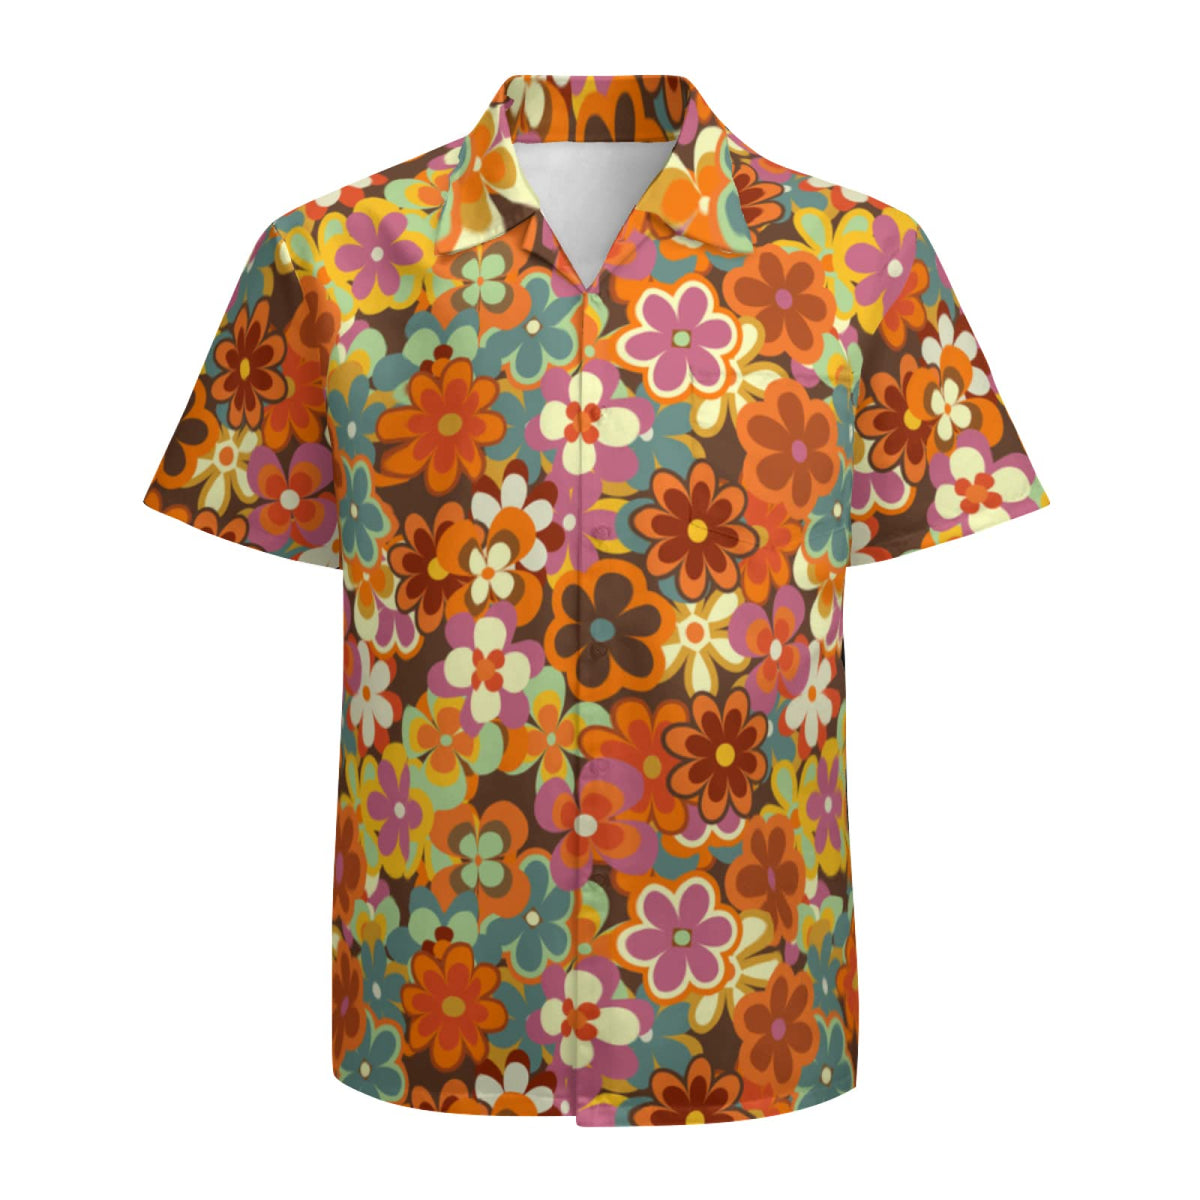 Men's Hawaiian Shirt Casual Button Down Short Sleeves Beach Shirt - 70s Hippie Flower